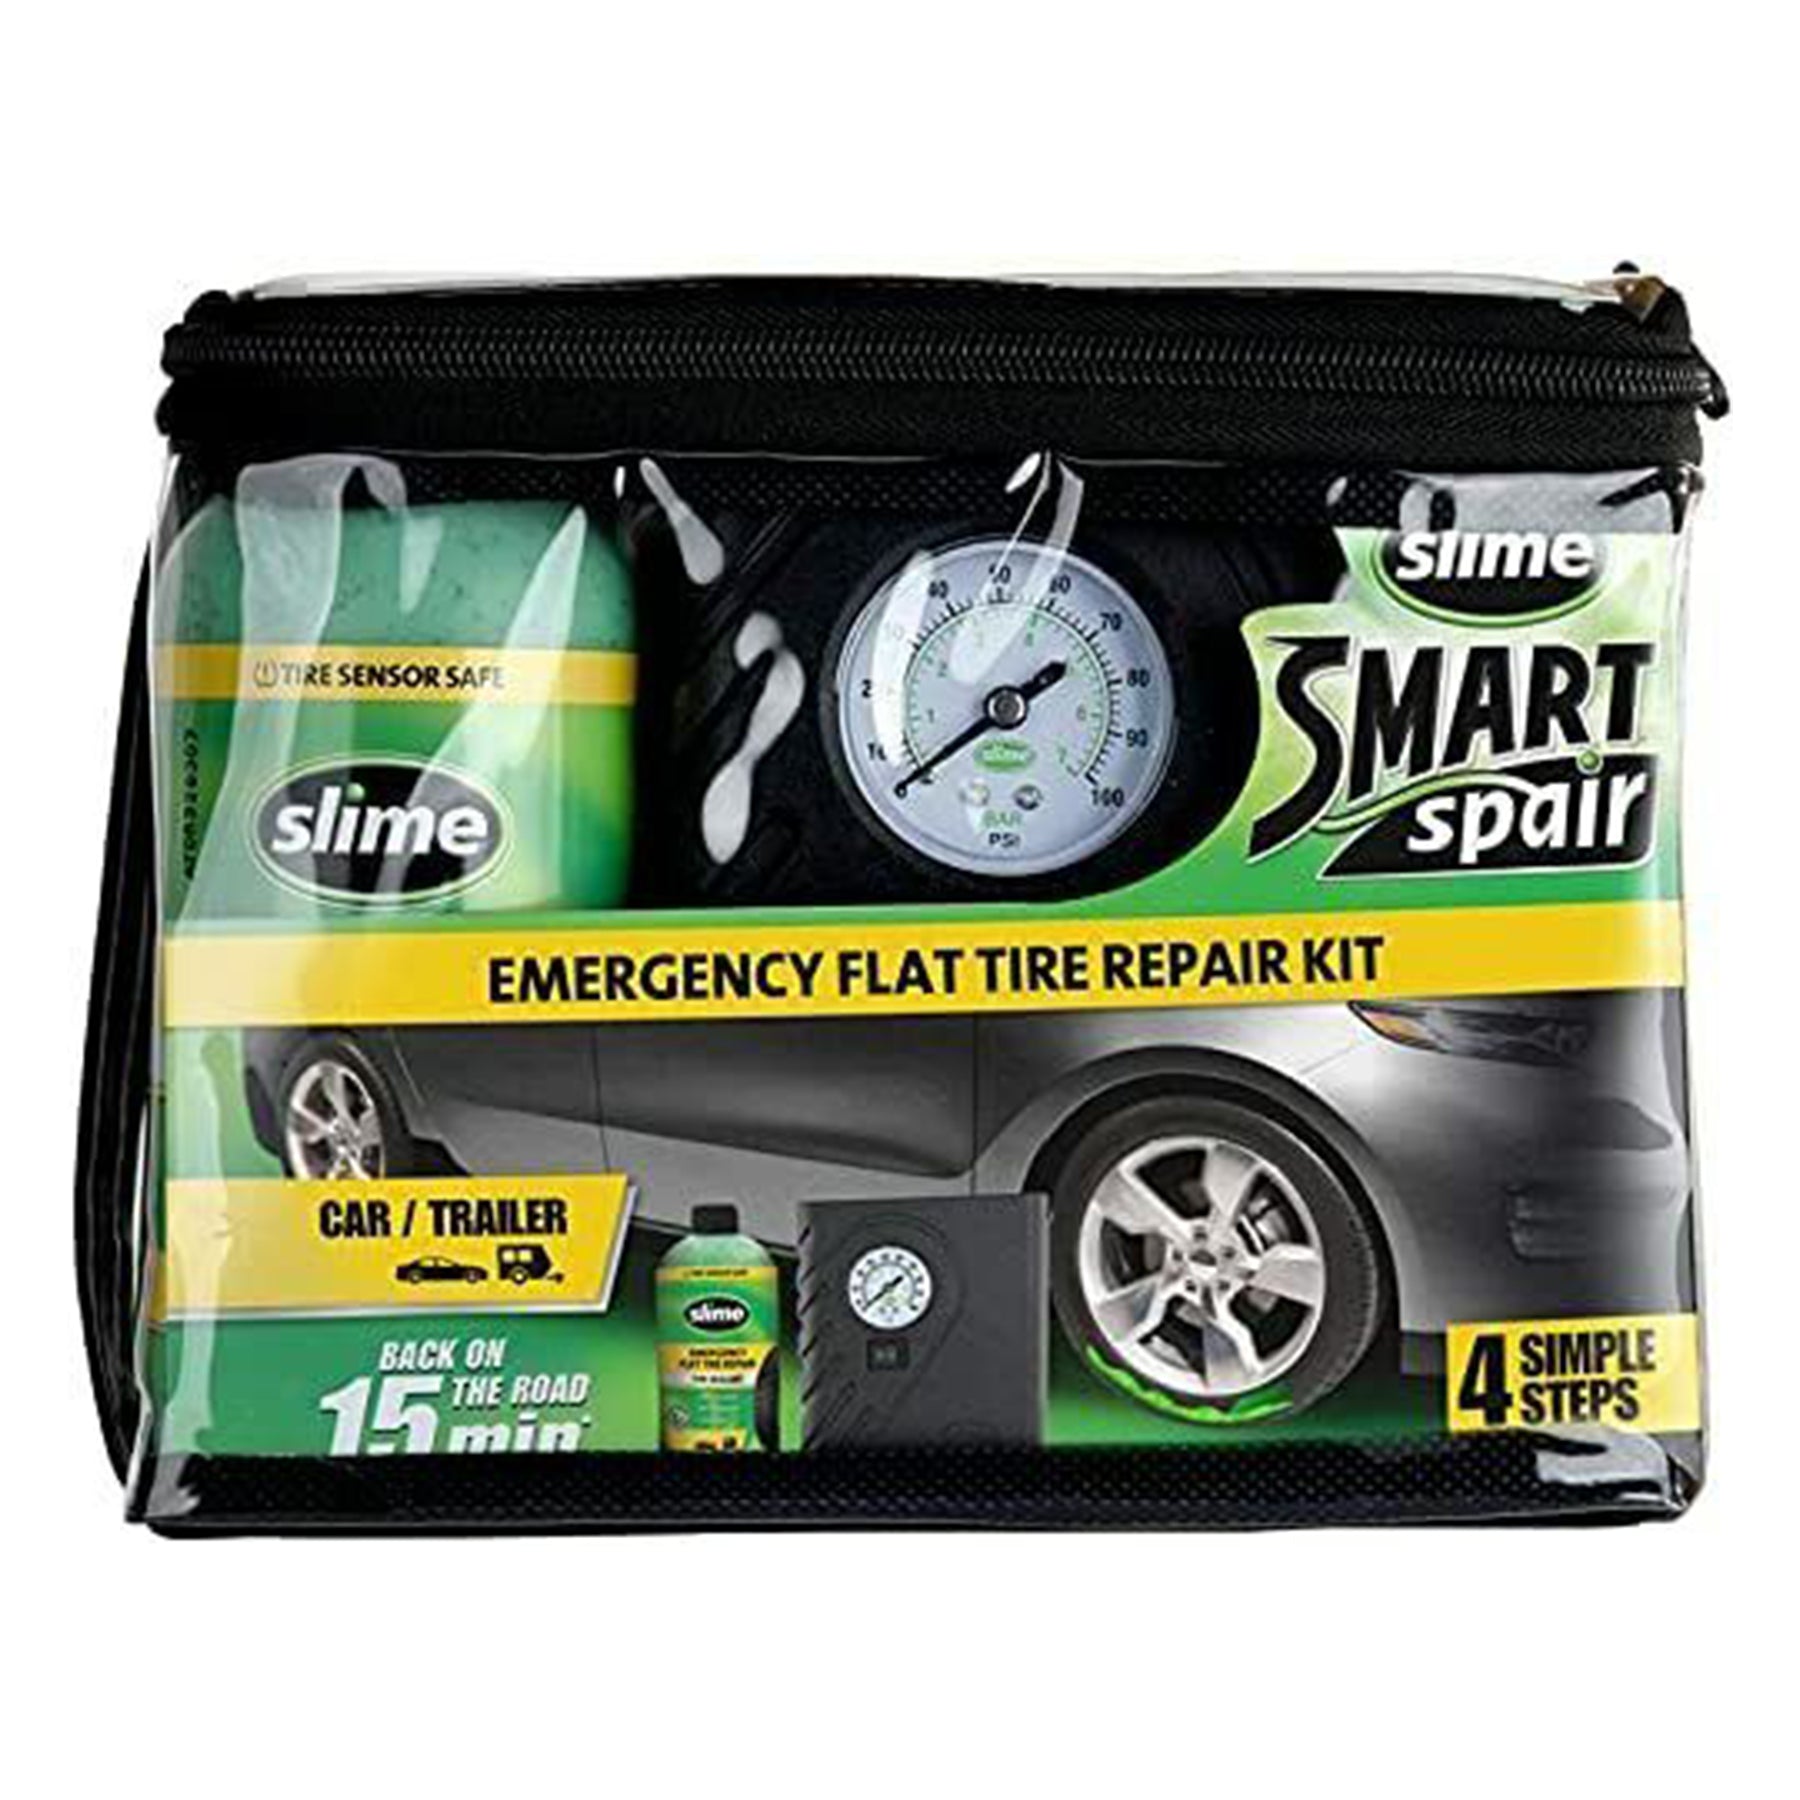 Smart Spair Flat Tire Repair Kit